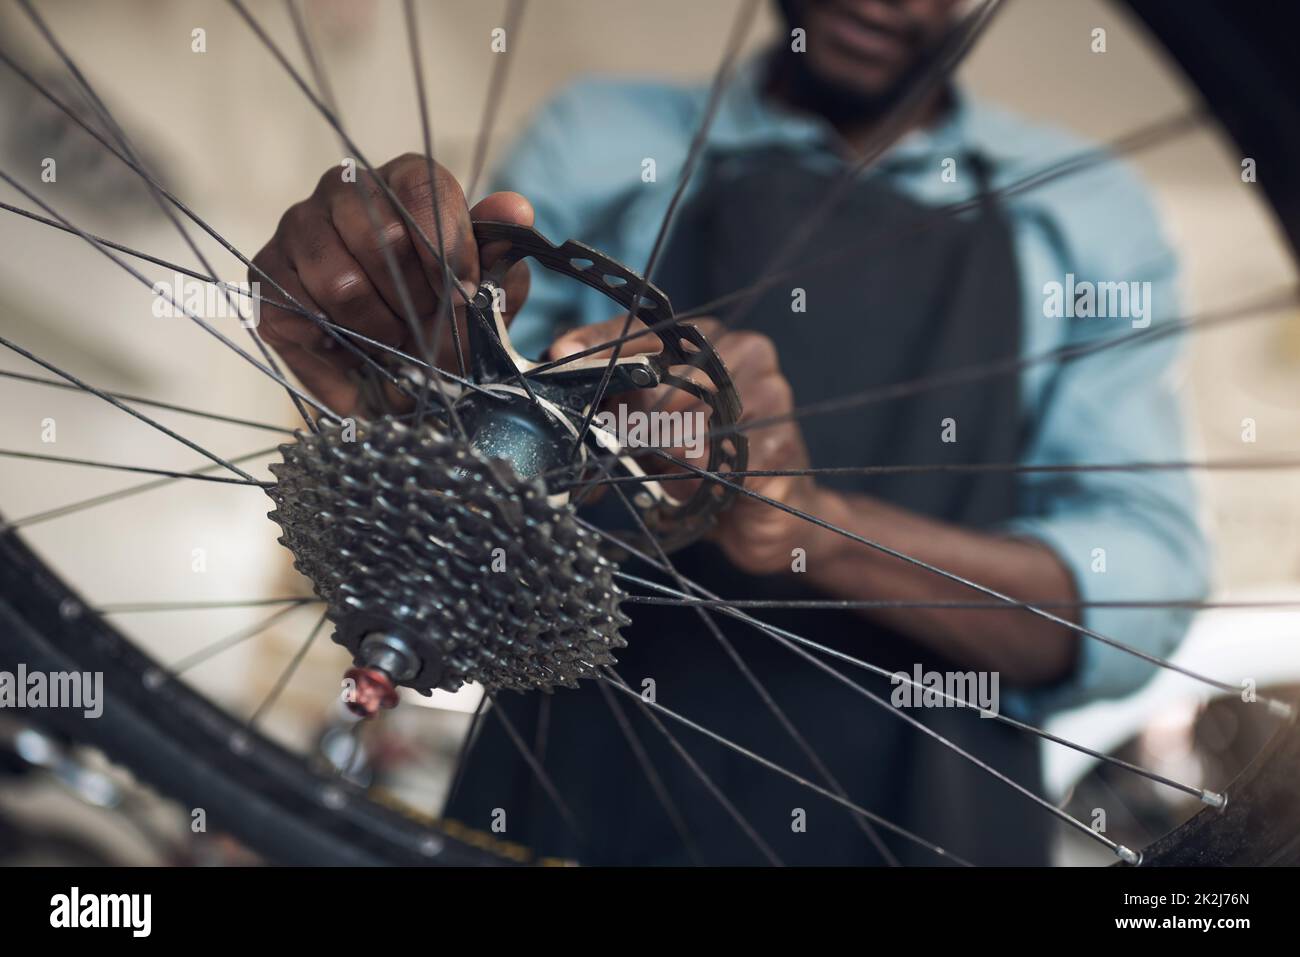 Vous êtes presque prêt pour une nouvelle génération de souvenirs. Photo d'un homme méconnaissable qui se tient seul dans son atelier et répare une roue de vélo. Banque D'Images